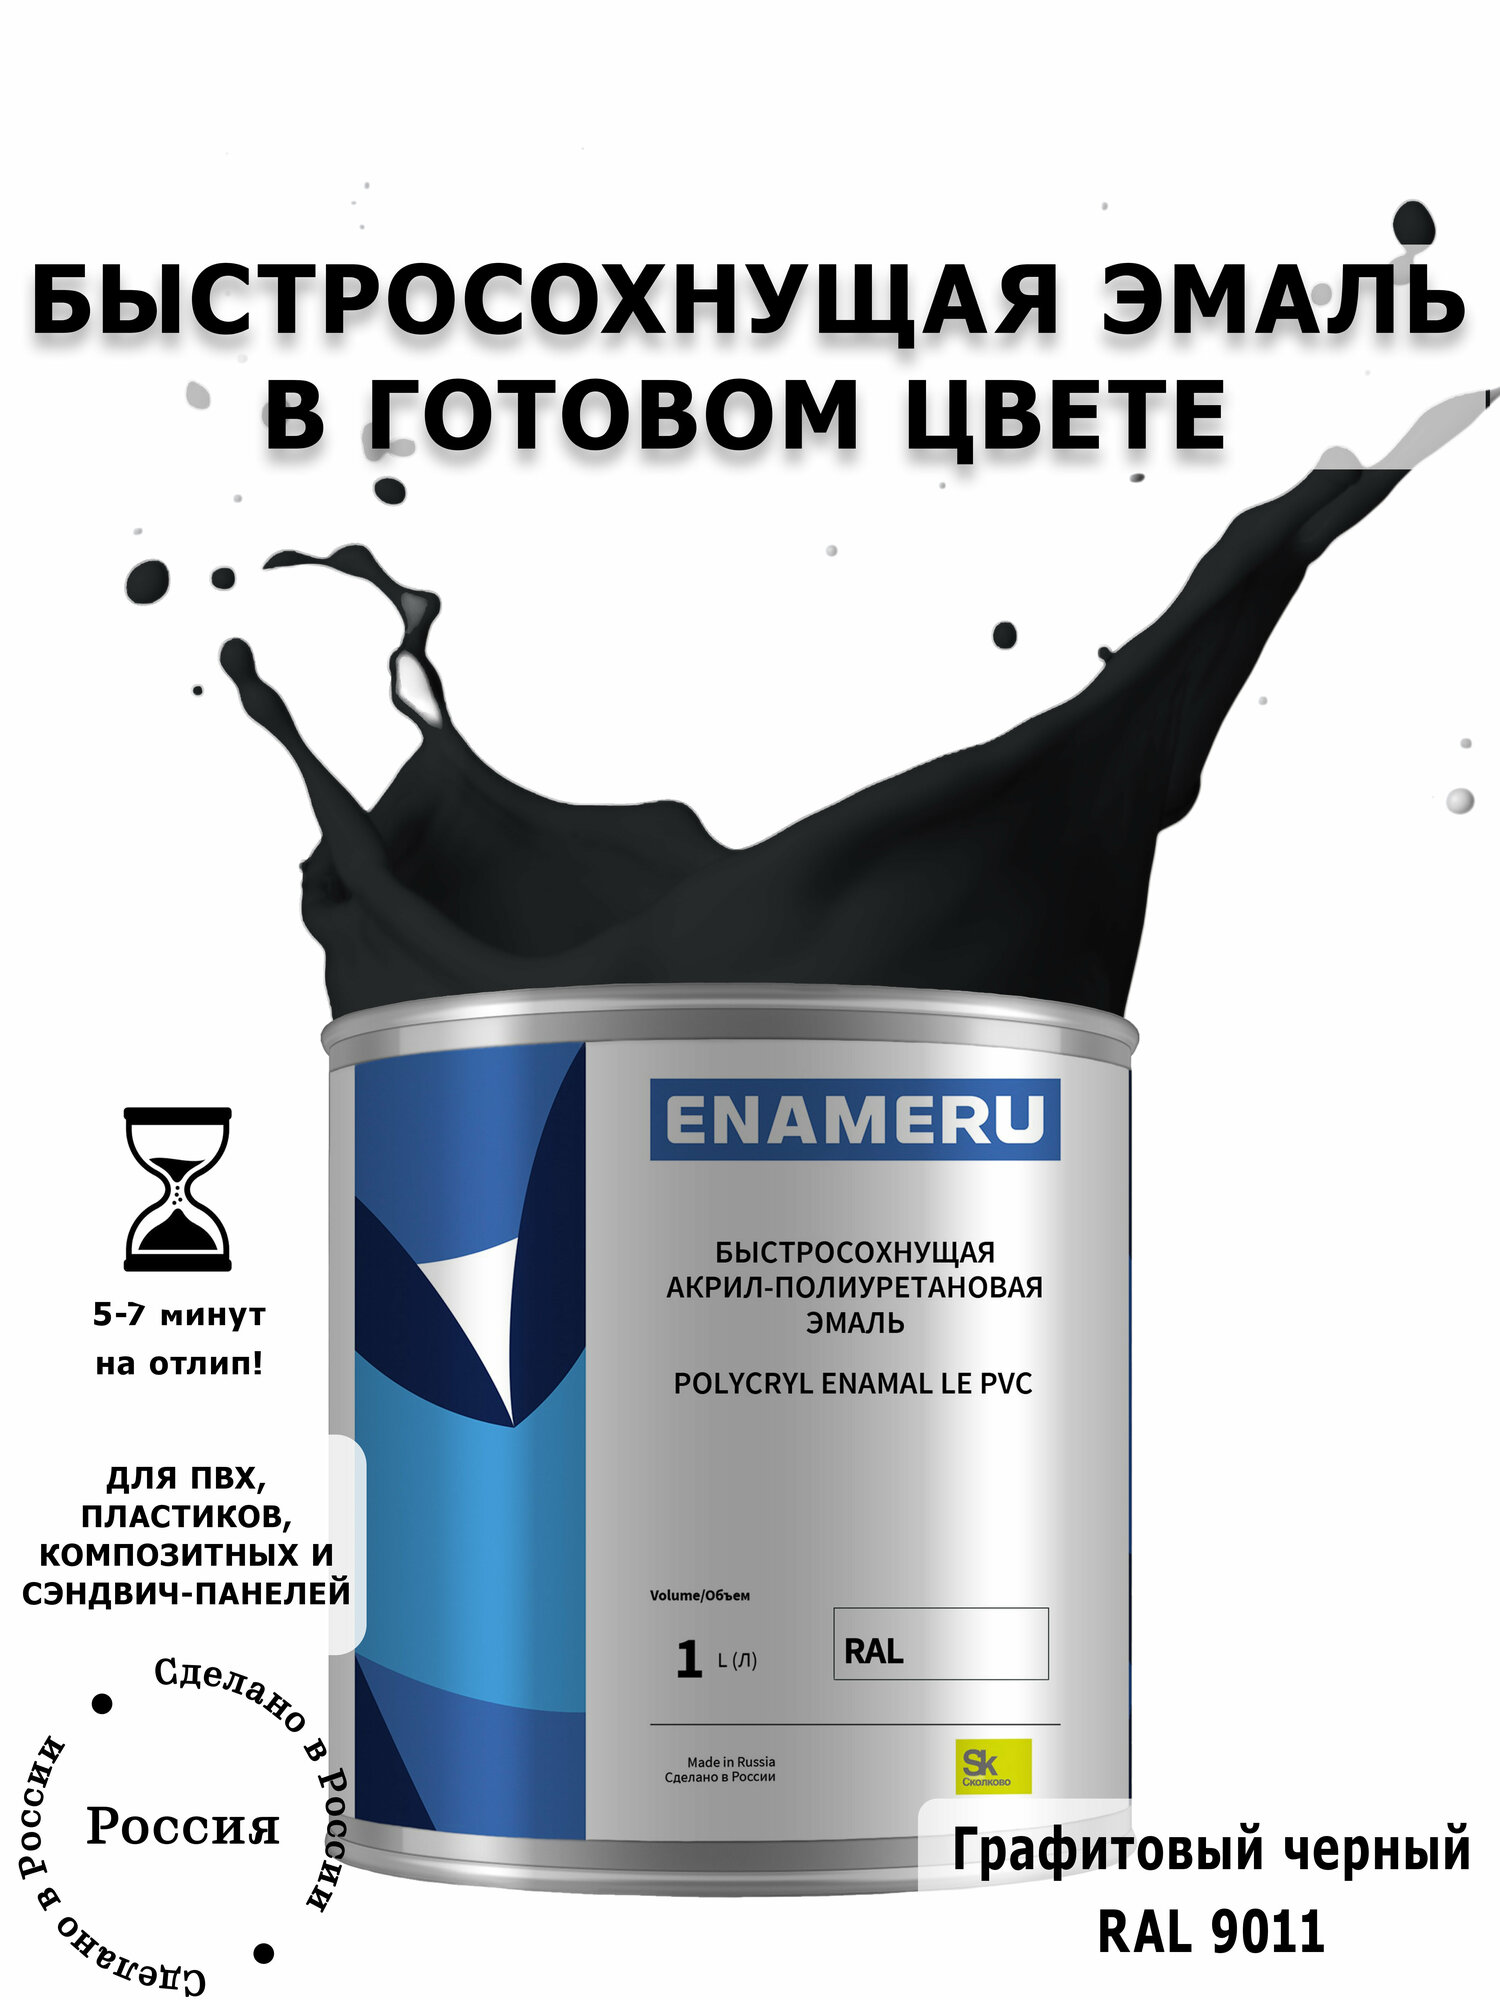 Эмаль для ПВХ и пластика с компонентами Энамеру, Шелковисто-матовое покрытие, 1л, Графитовый черный RAL 9011